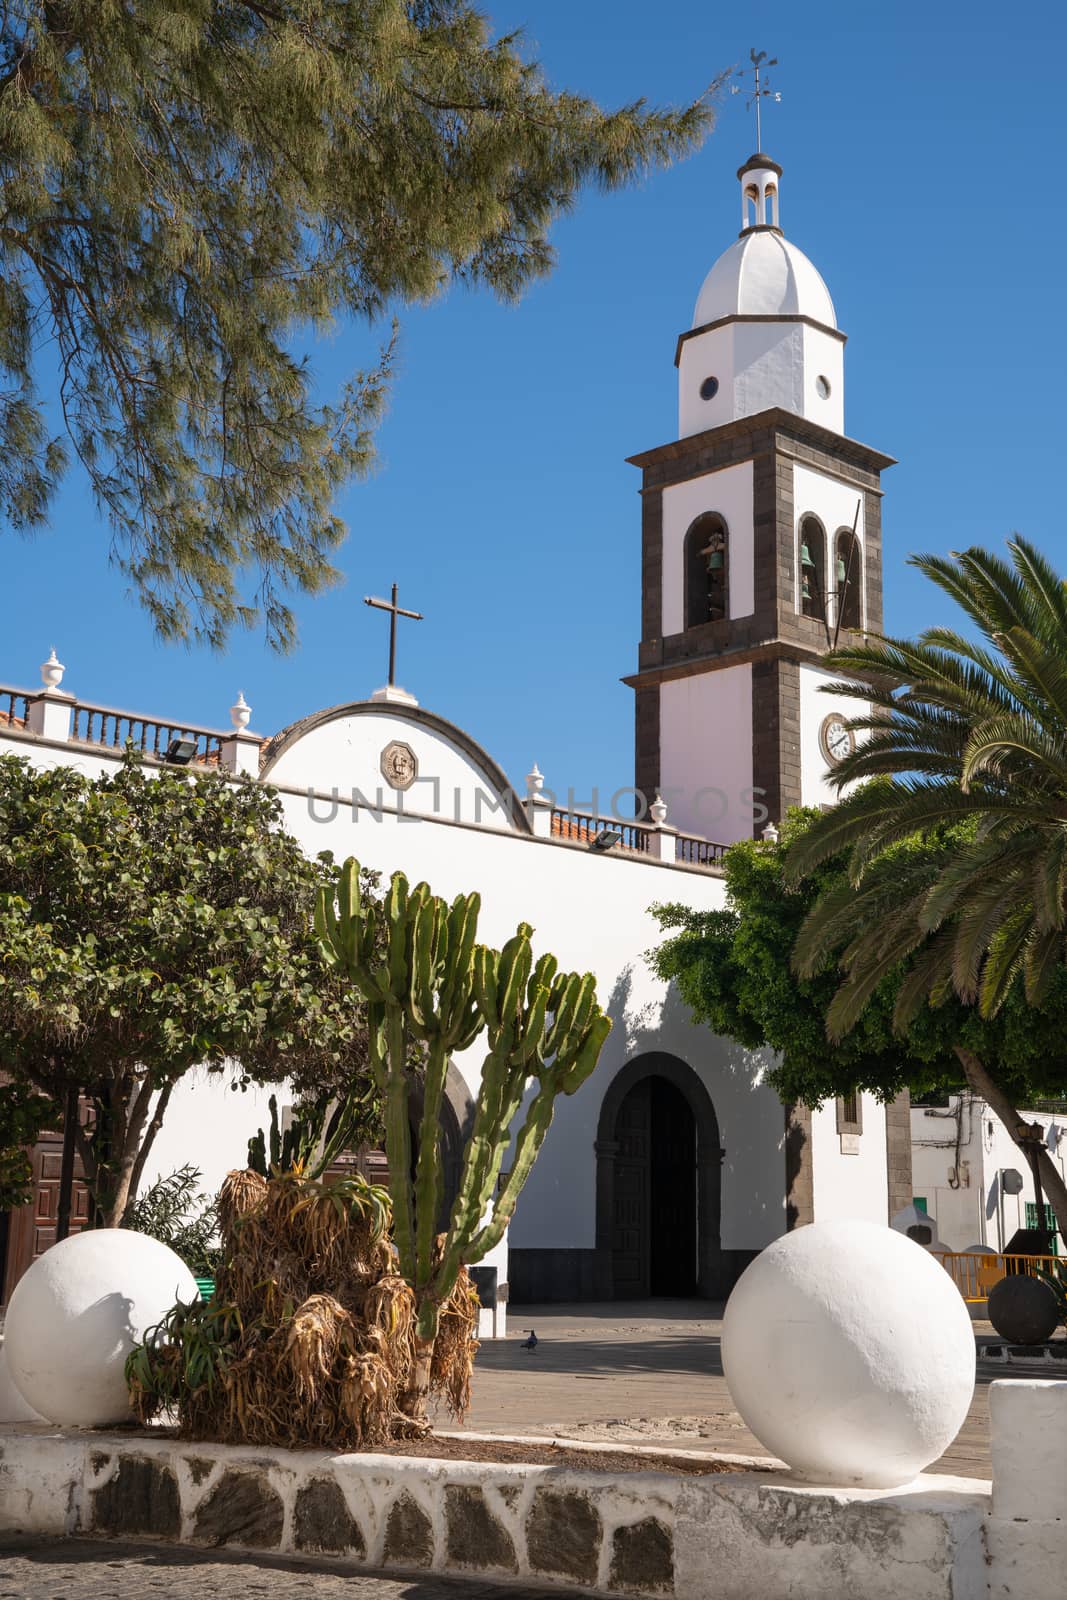 Outdoor image of an old church, Iglesia de San Gines of Arrecife, Lanzarote, Spain